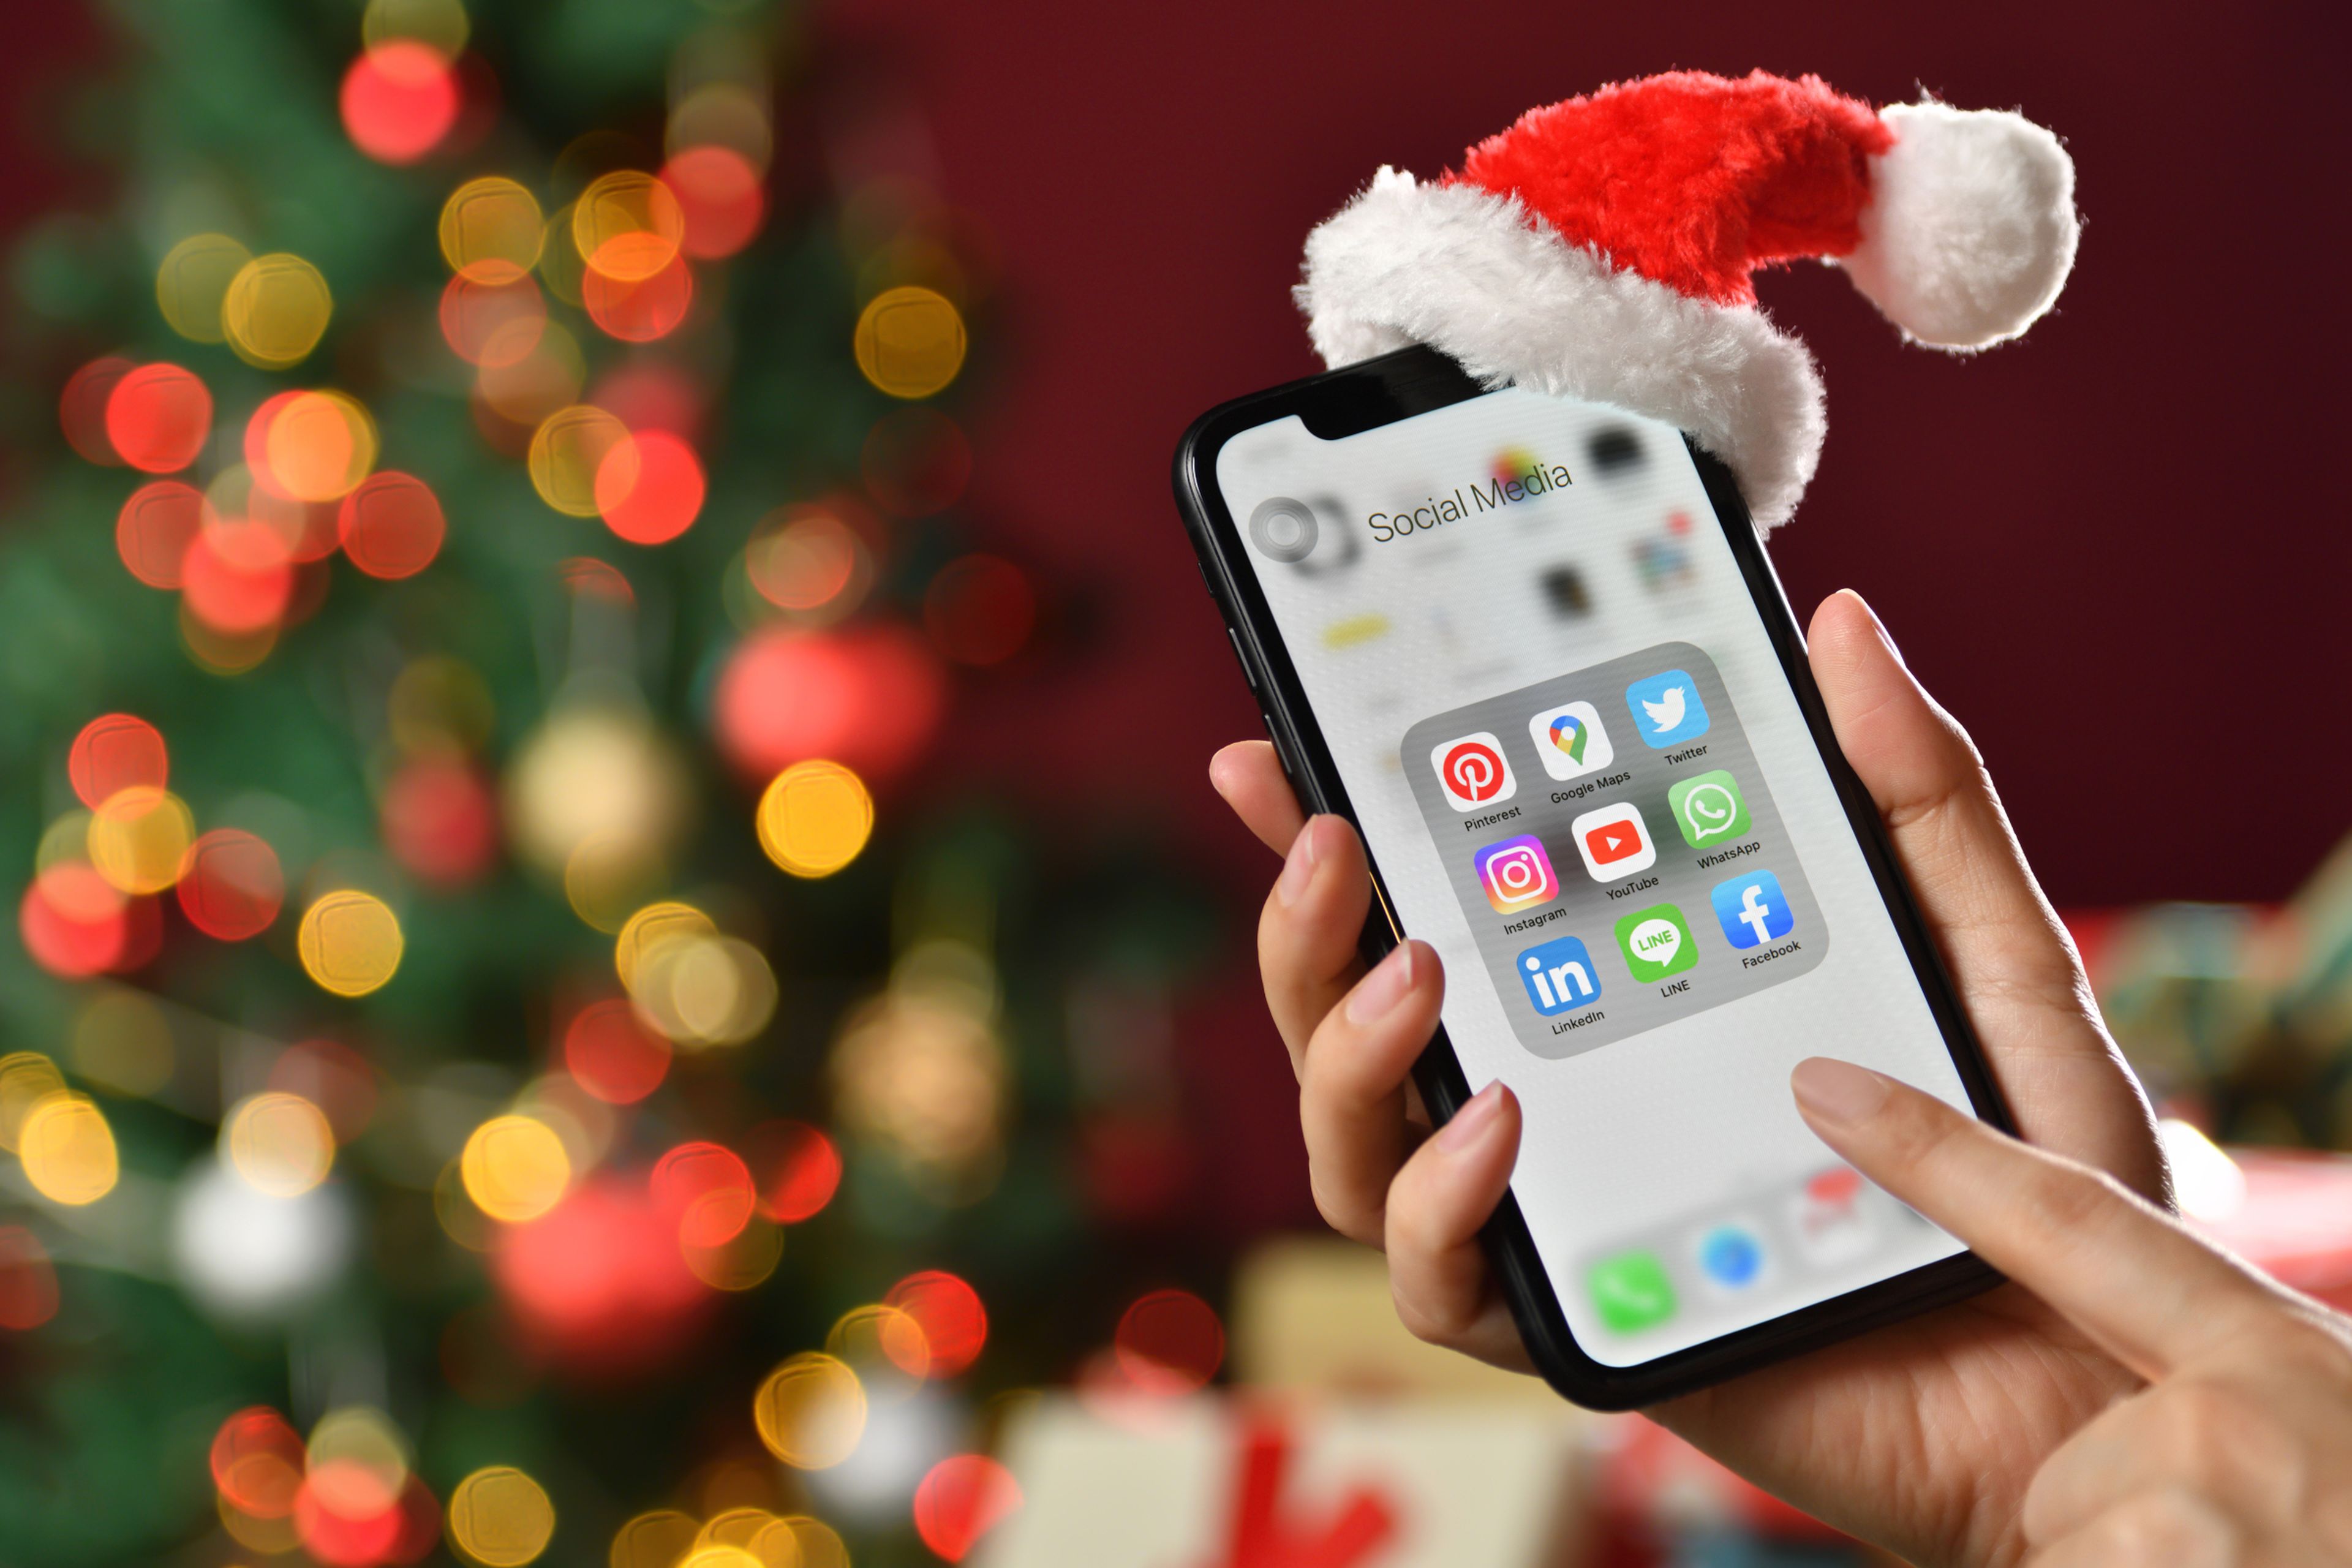 Frases cortas de felicitaciones de Navidad para enviar por WhatsApp |  Computer Hoy